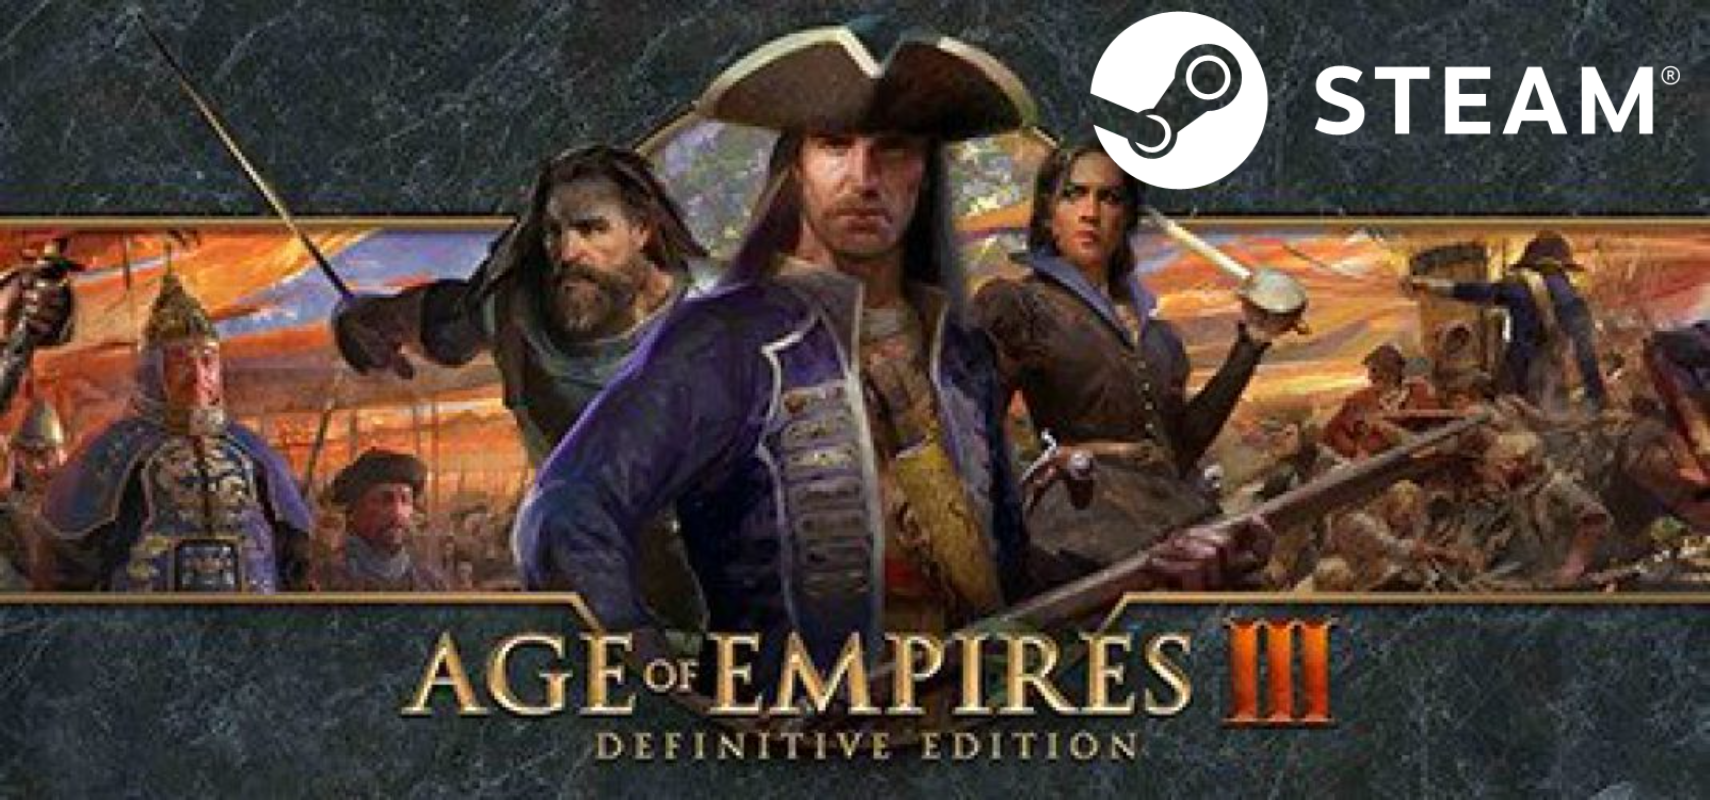 Купить ⭐️ Age of Empires III Definitive - STEAM (Region free) недорого, выбор у разных продавцов с разными способами оплаты. Моментальная доставка.